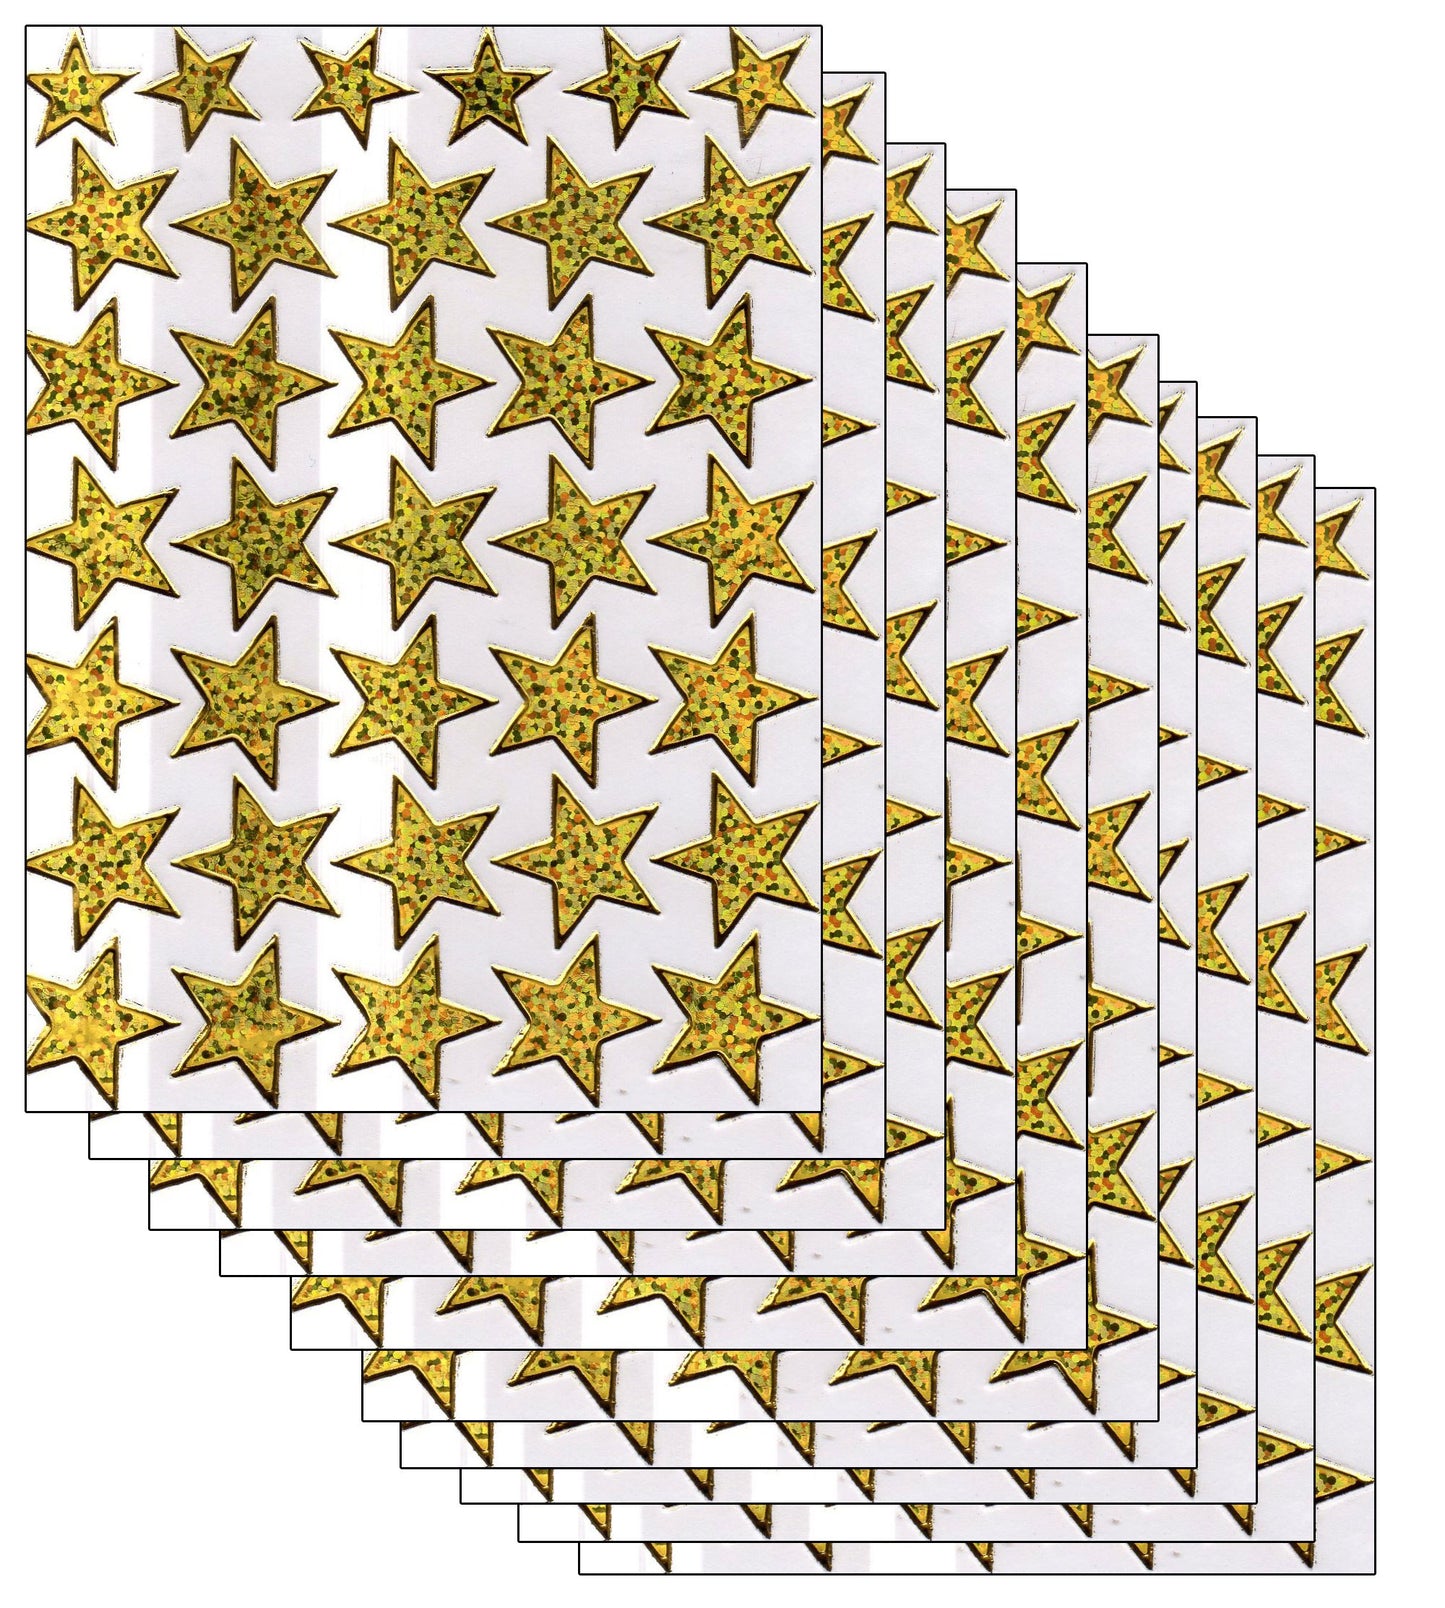 Étoiles étoiles autocollants colorés autocollants effet métallique scintillant pour enfants artisanat maternelle anniversaire 1 feuille 131